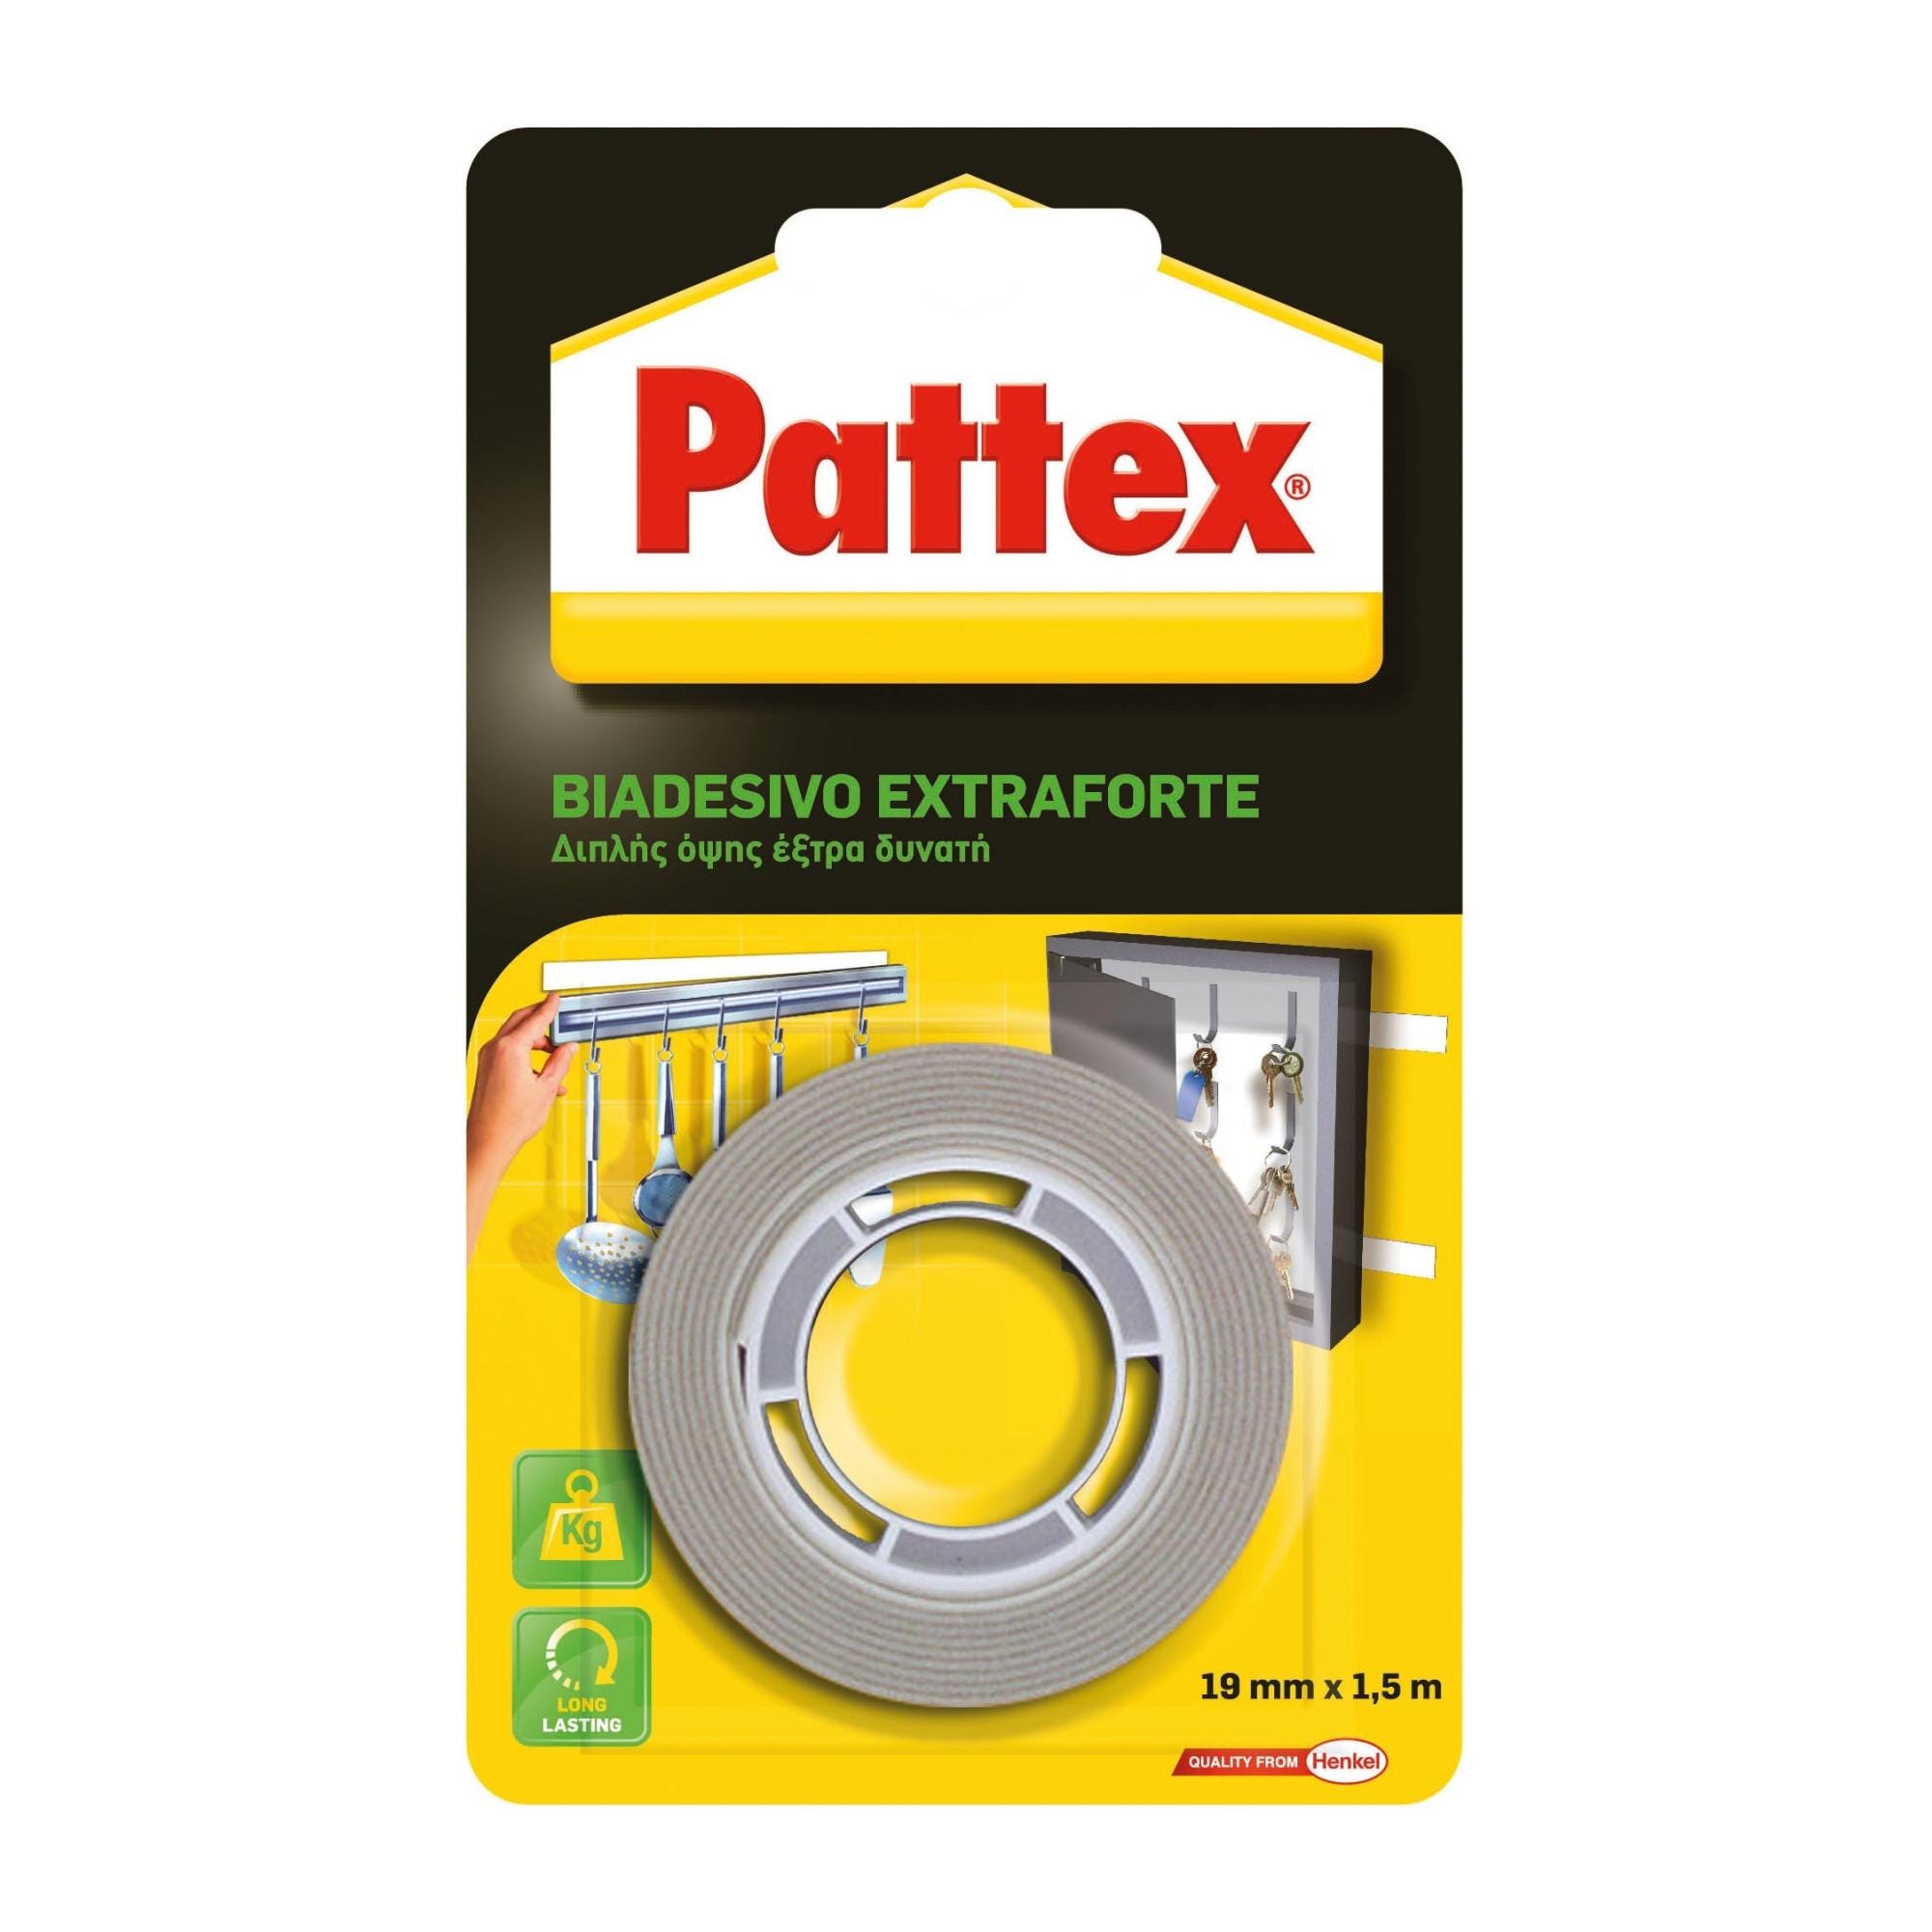 Pattex nastro - Edilizia e riparazione